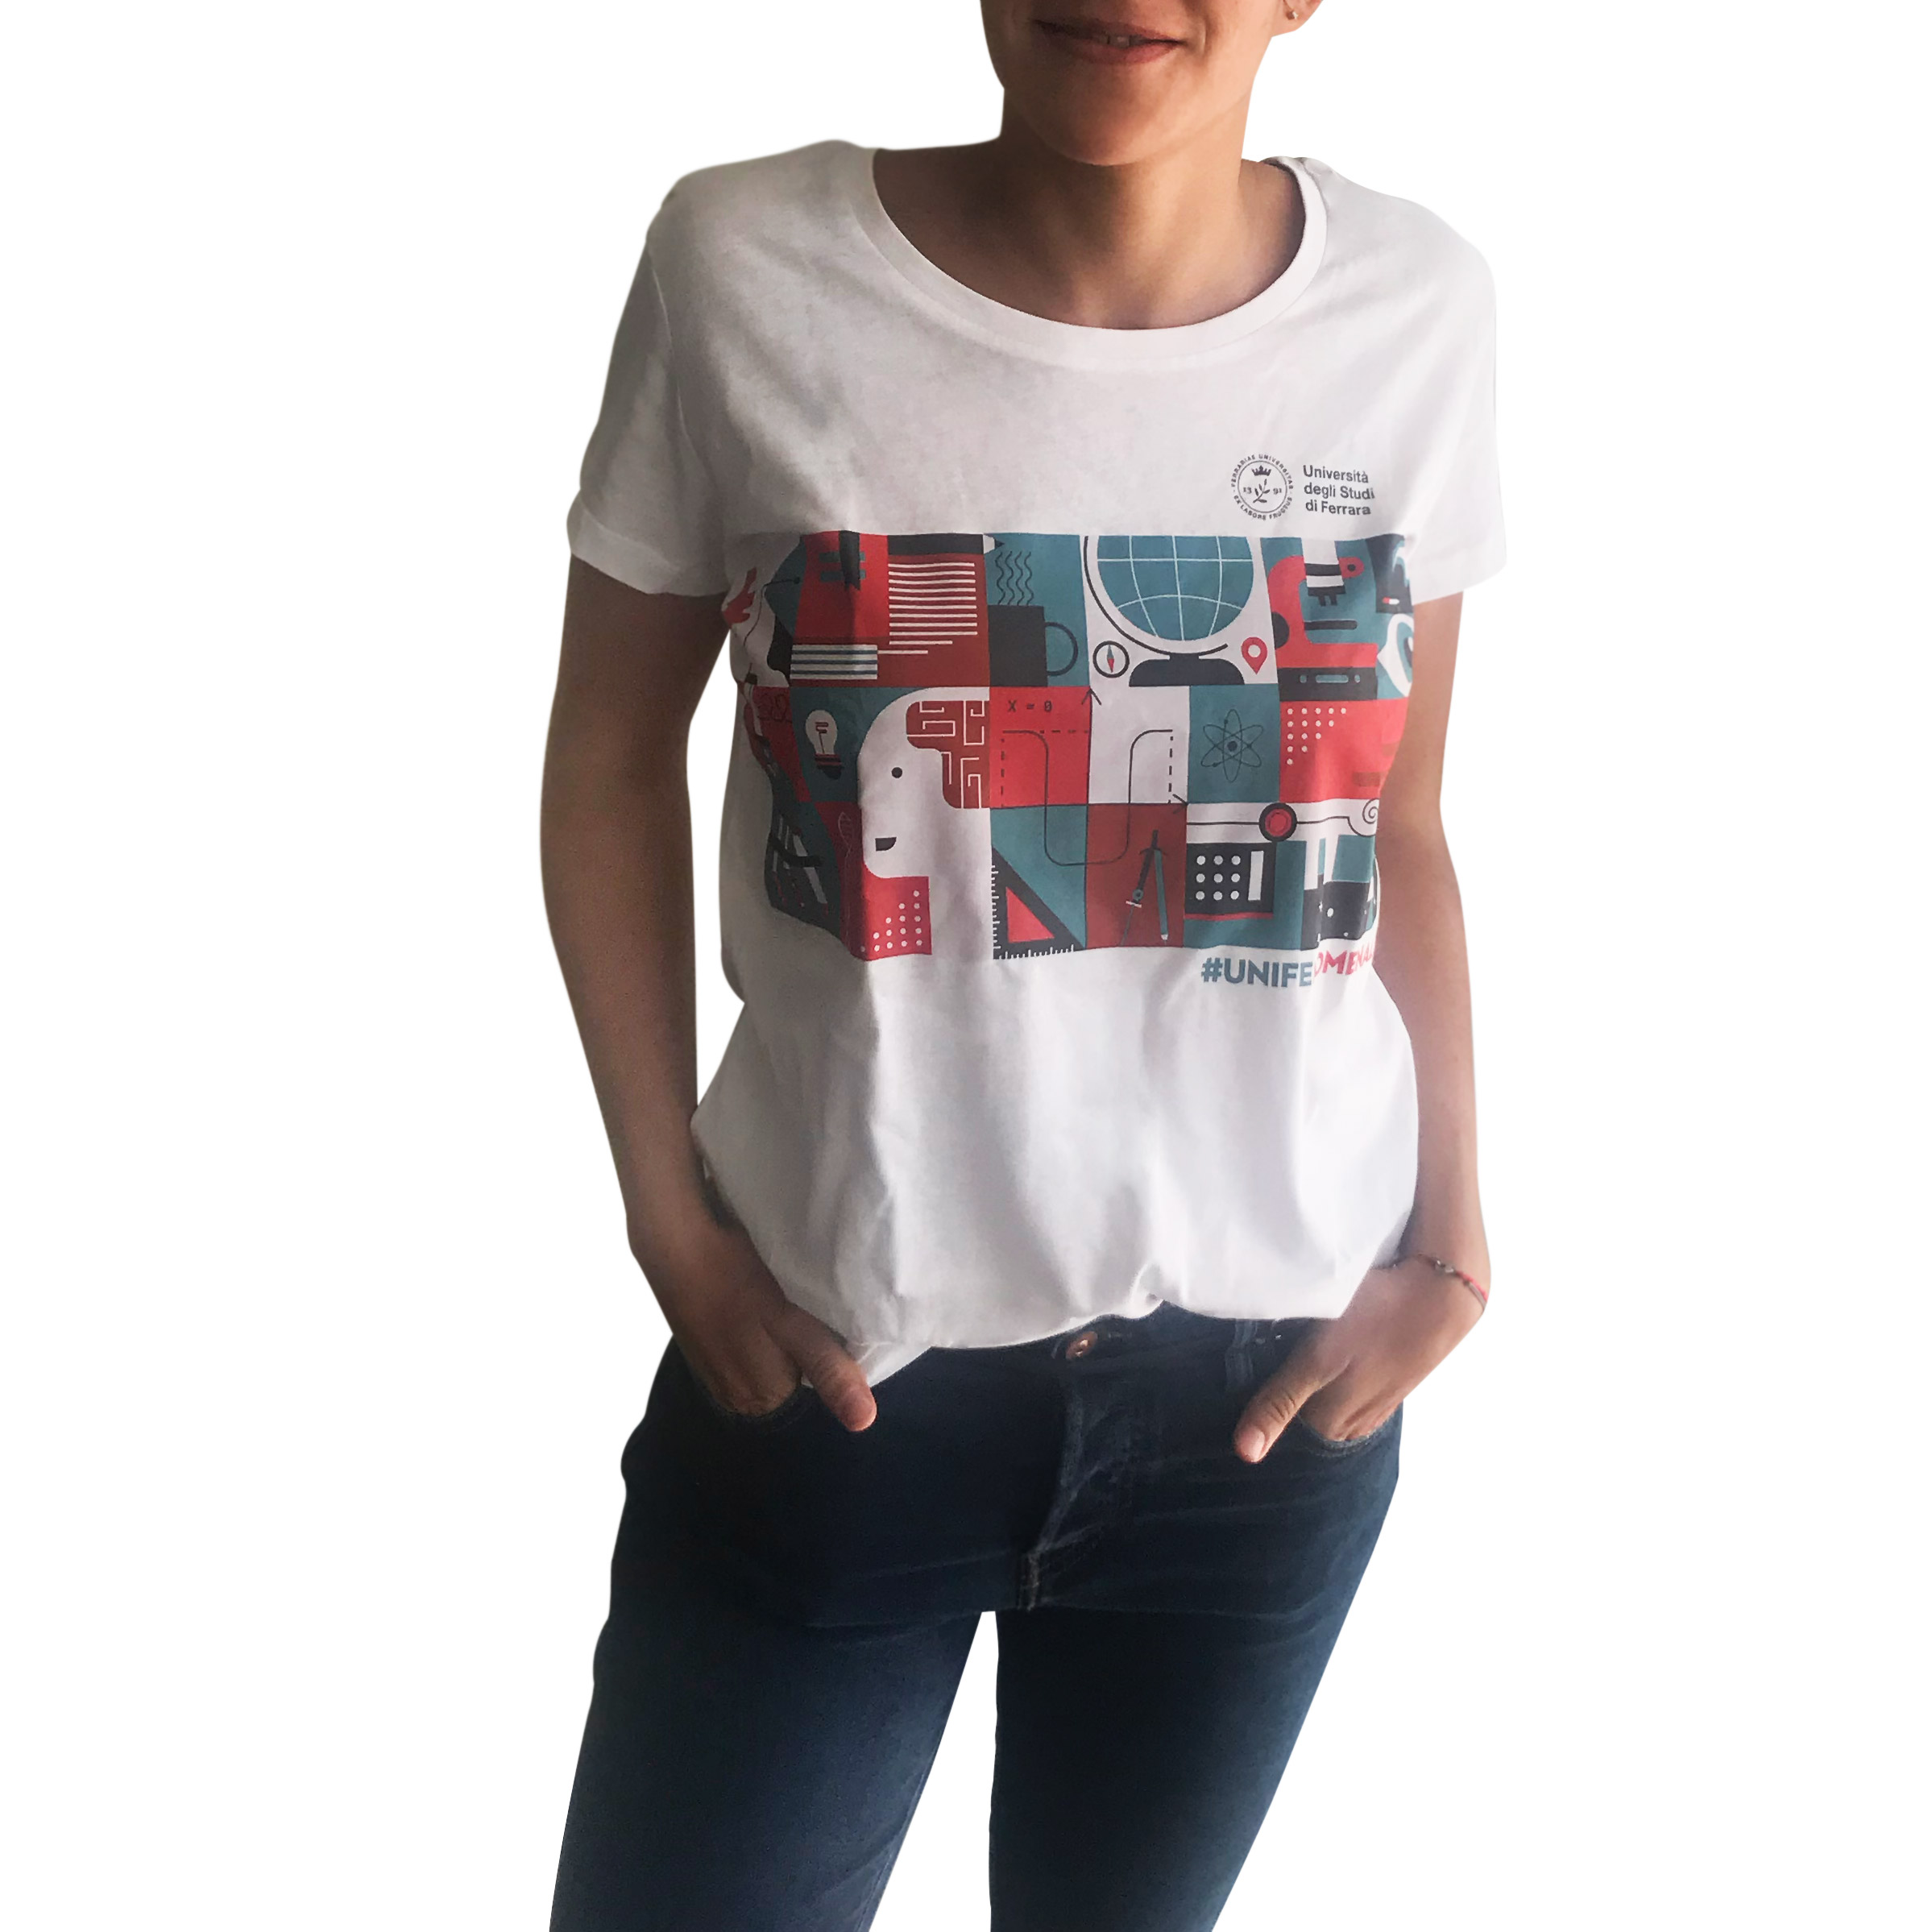 T-shirt donna #unifenomenale per sostenere i progetti di ricerca Unife